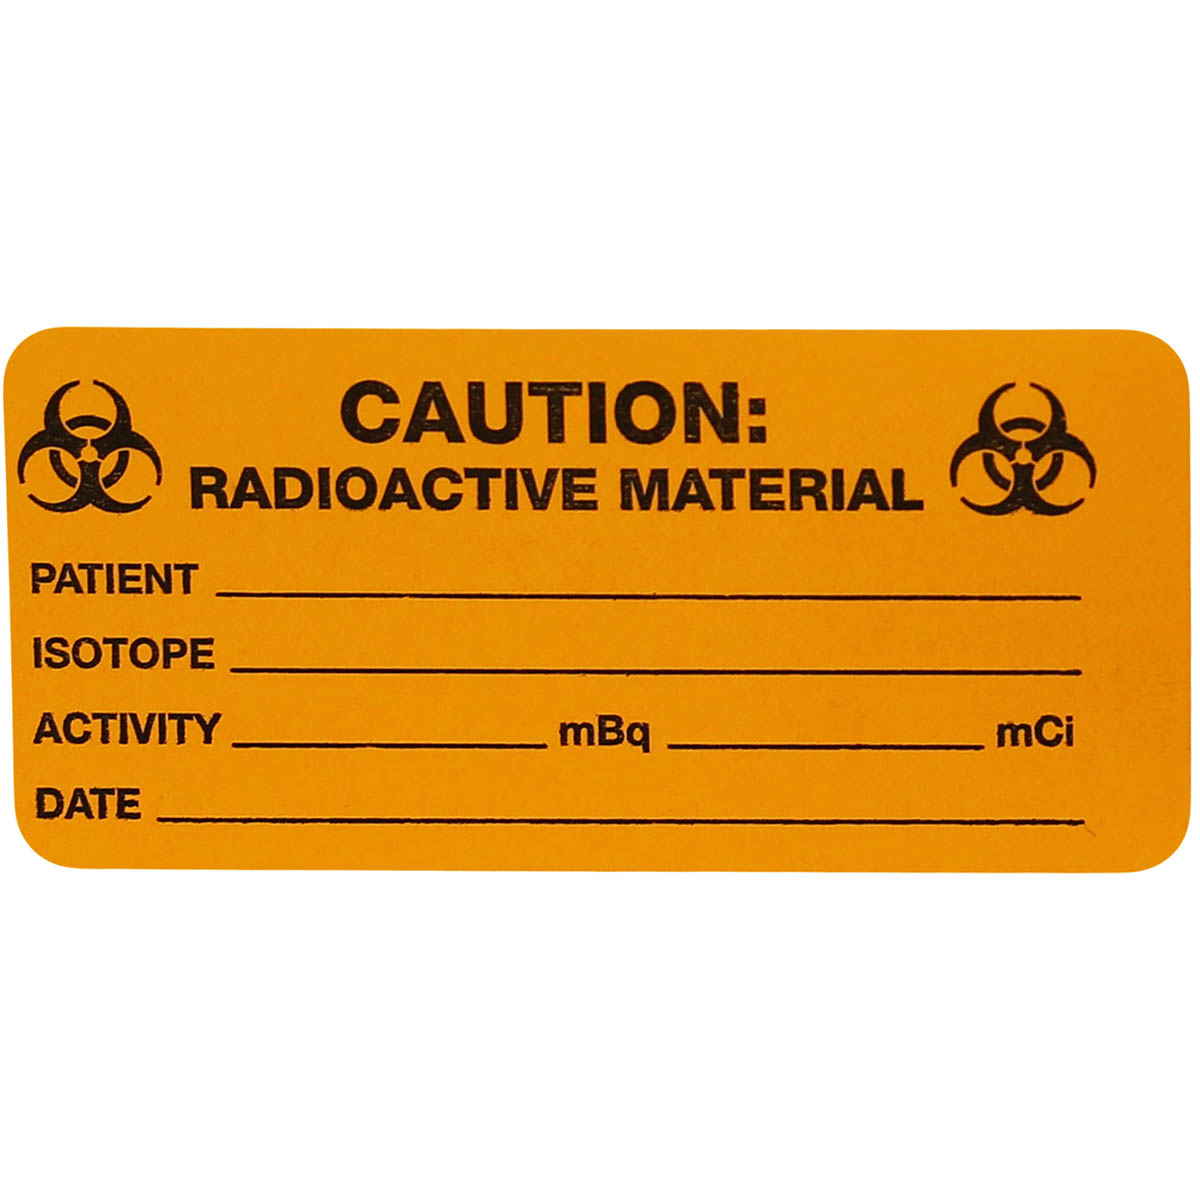 Radioactive Material Warning Stickers Radioactive Materials